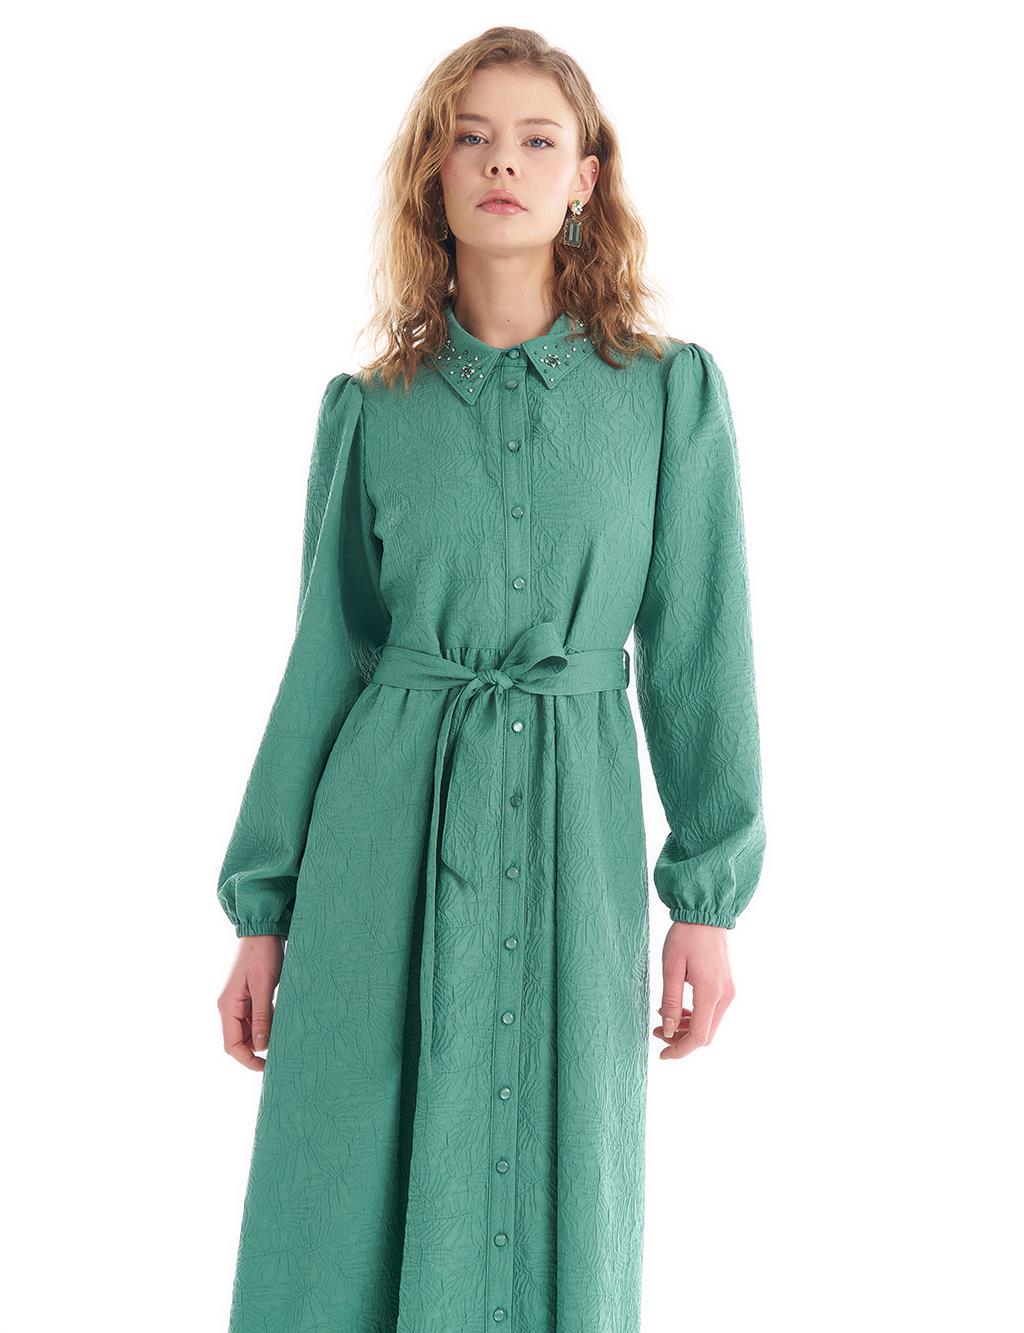 Платье с воротником с каменной вышивкой Озерно-зеленое KYR